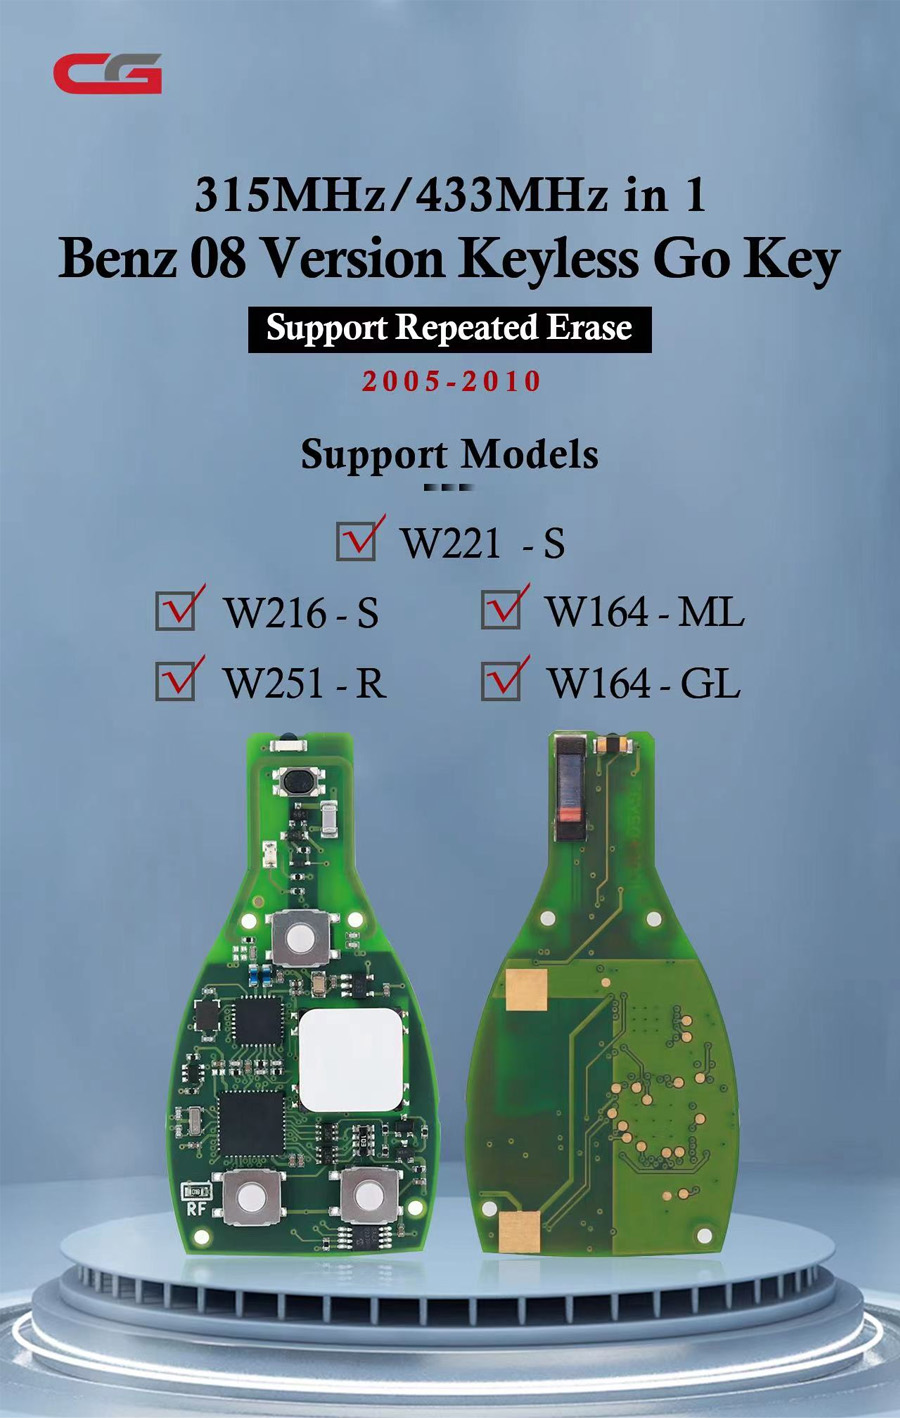 Benz 08 Version Keyless Go Key